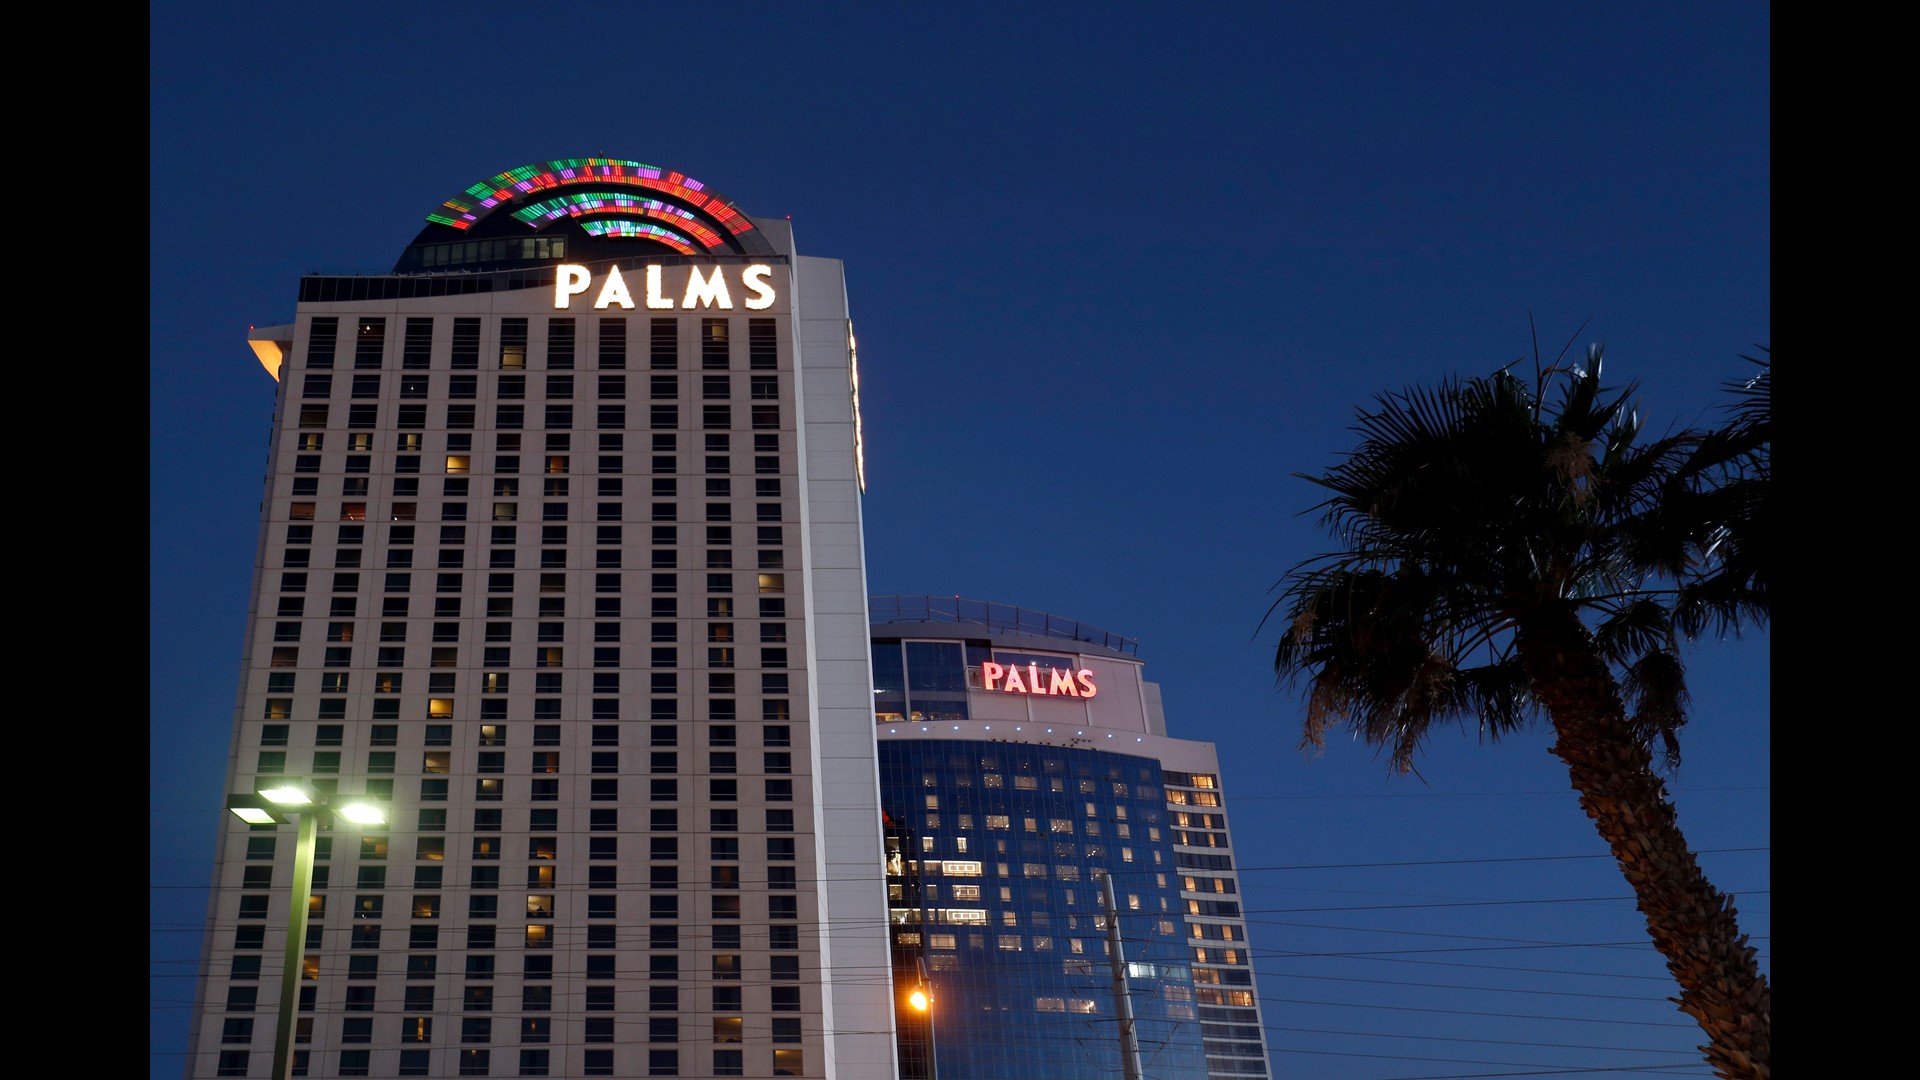 palms hotel casino las vegas